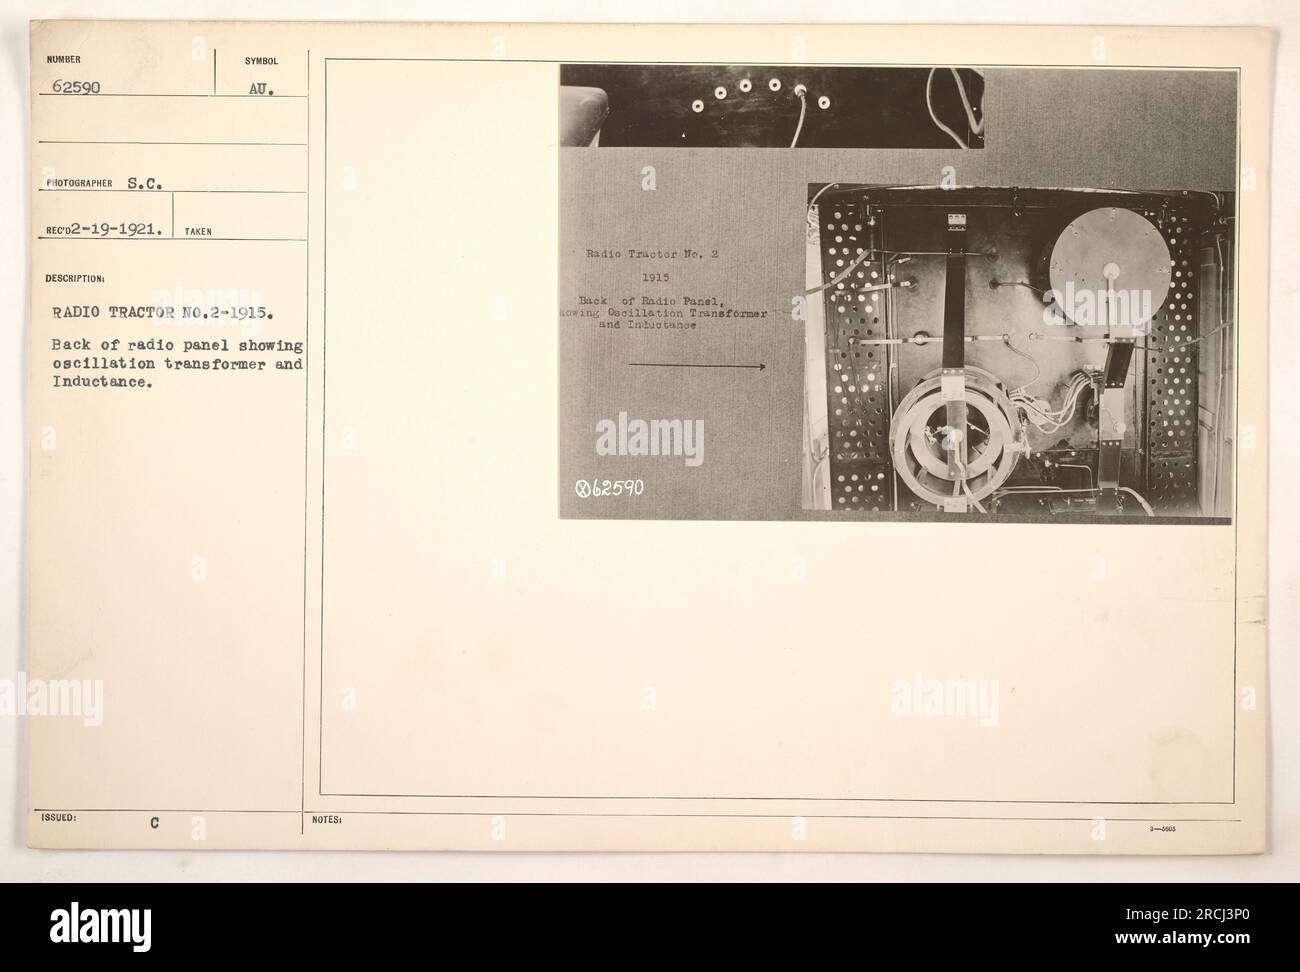 Rückansicht des Radiotraktors Nr. 2-1915, fotografiert von S.C. Empfehlung am 19. Februar 1921. Die Abbildung zeigt die Rückseite des Radiotafels mit dem Oszillationstransformator und der Induktivität mit dem Homber 062590-Symbol. Dies ist eine Beschreibung für den Funktraktor Nr. 2-1915. Stockfoto